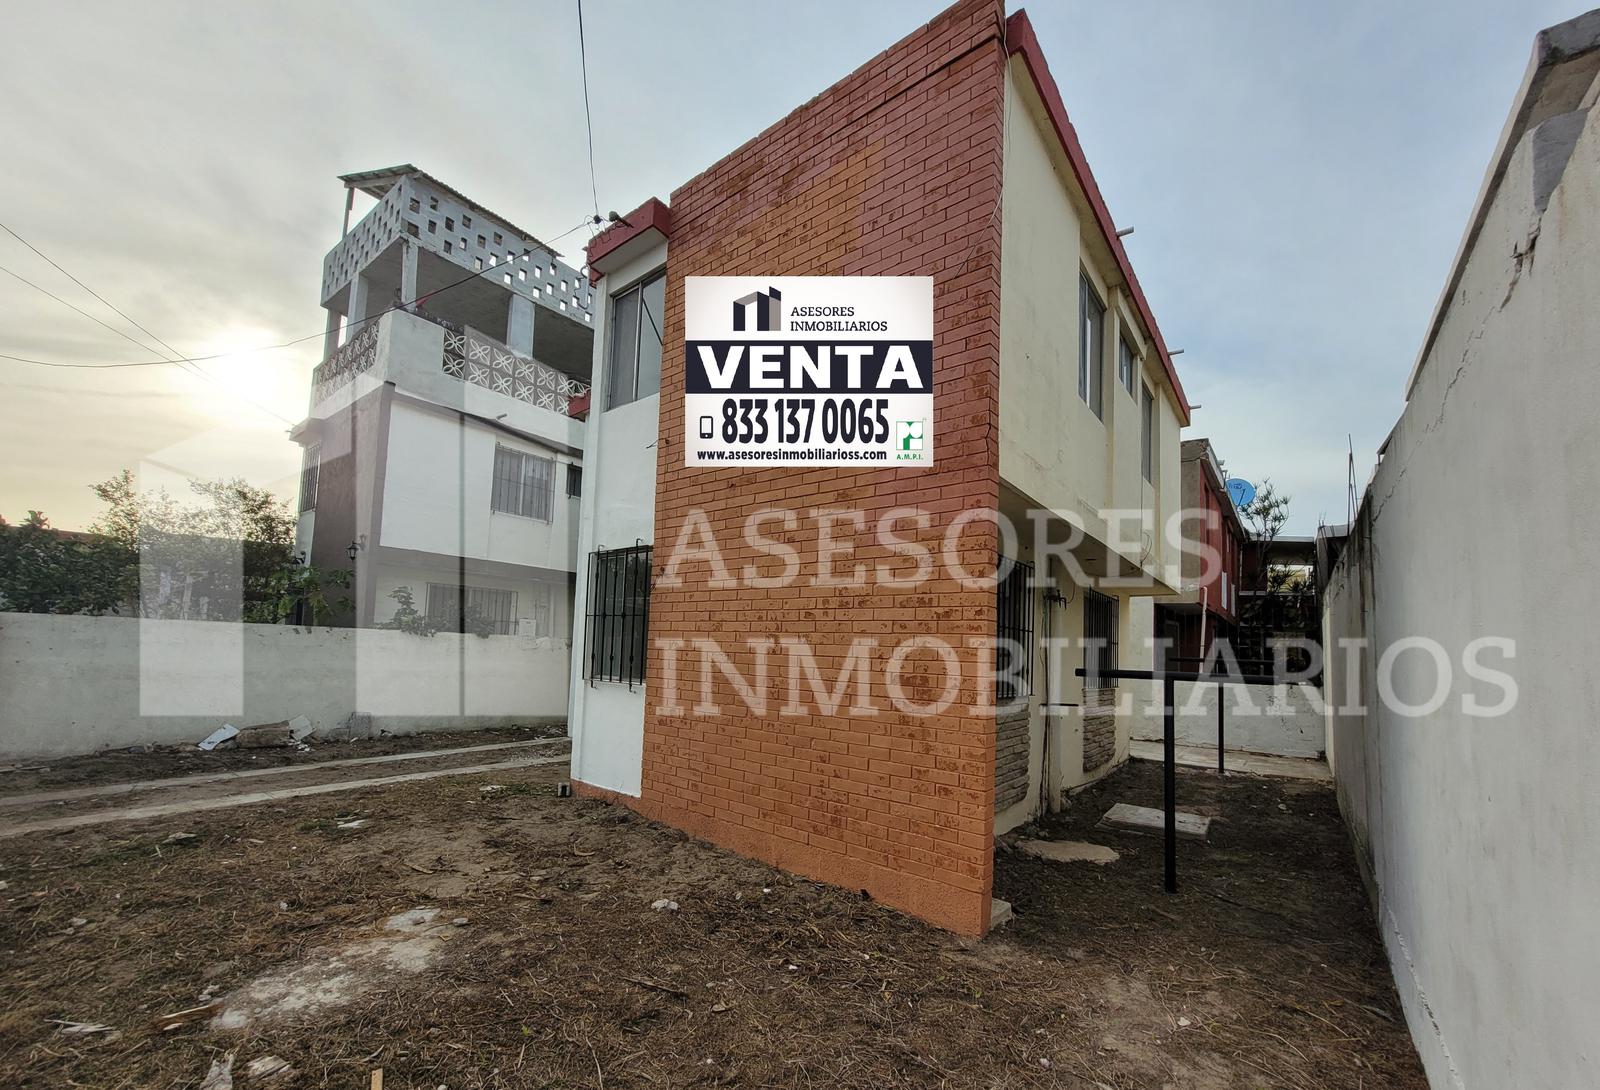 (LPCV2402) Casa en Venta en la Col. Magisterio Cd. Madero